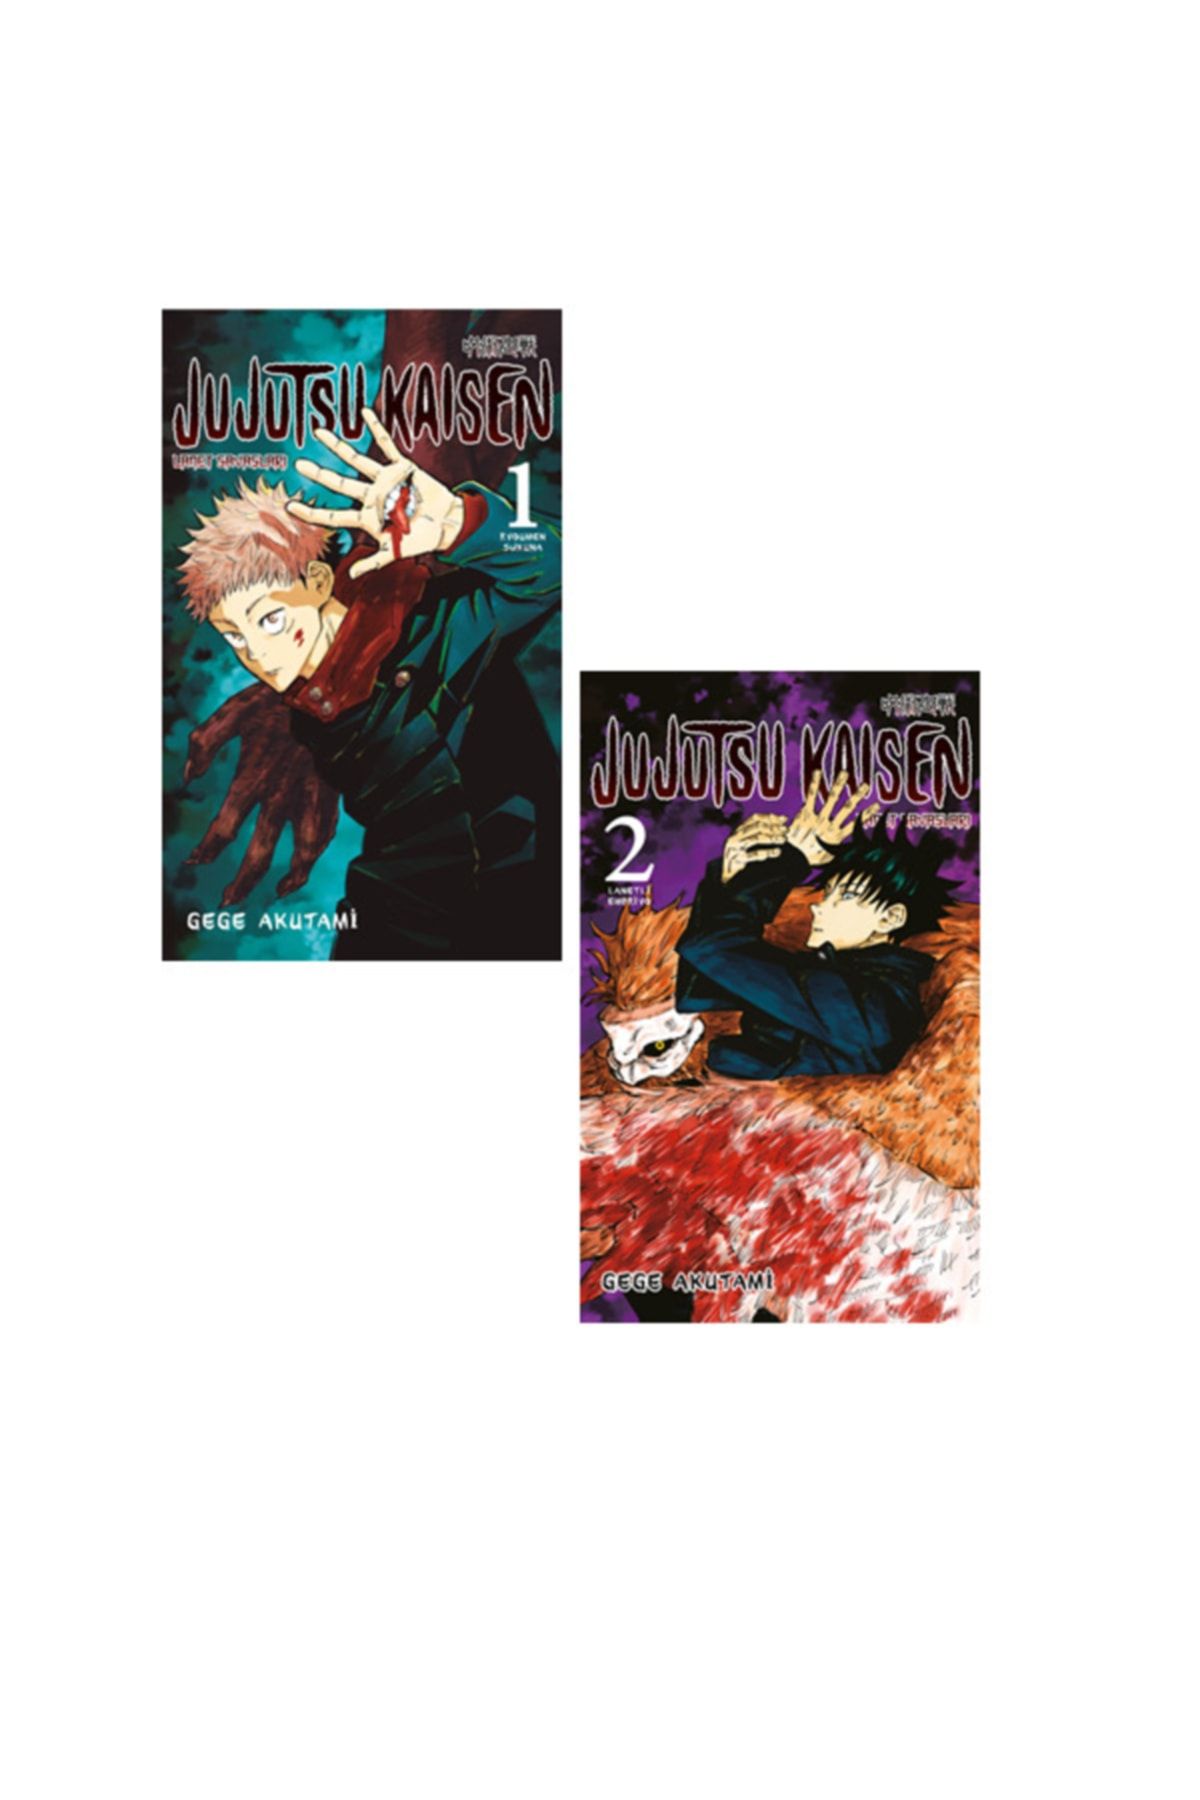 Gerekli Şeyler Yayıncılık Jujutsu Kaisen 1-2. Ciltler Manga Seti - Gege Akutami